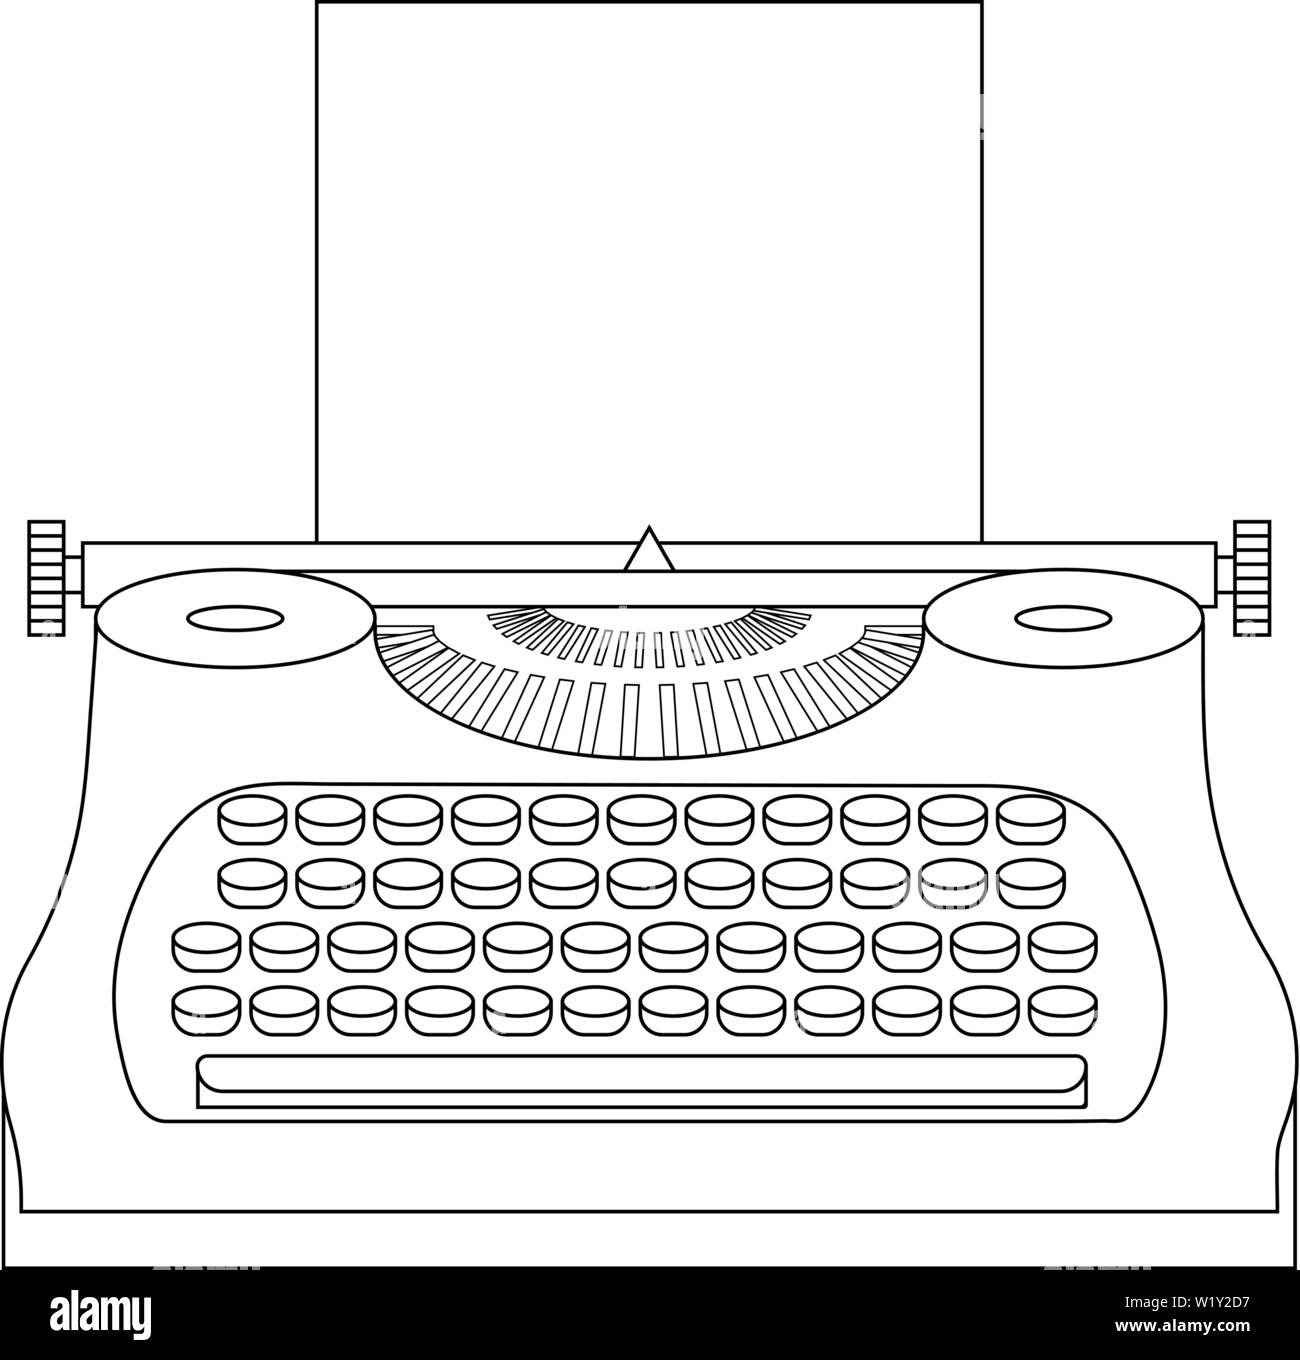 Linienstil Symbol einer Schreibmaschine Maschine. Journalist. Vintage tehnology. Tastatur. Antike Geräte. Sauber und modern Vektor-illustration fo Stock Vektor